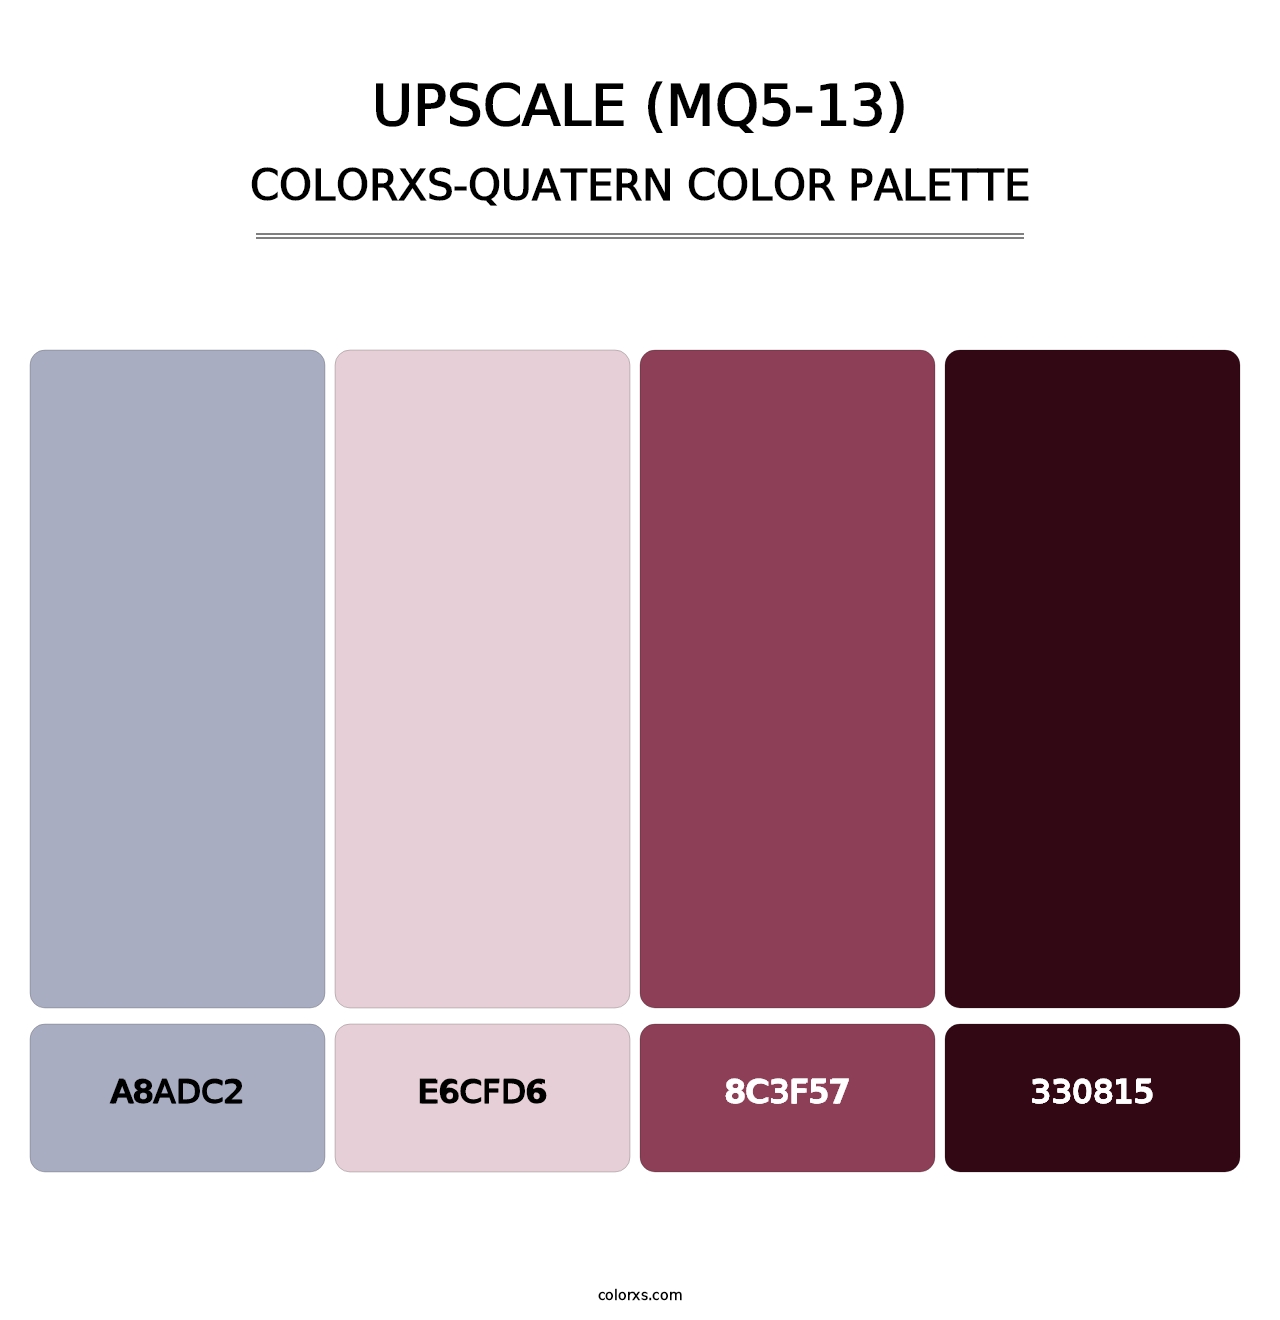 Upscale (MQ5-13) - Colorxs Quatern Palette